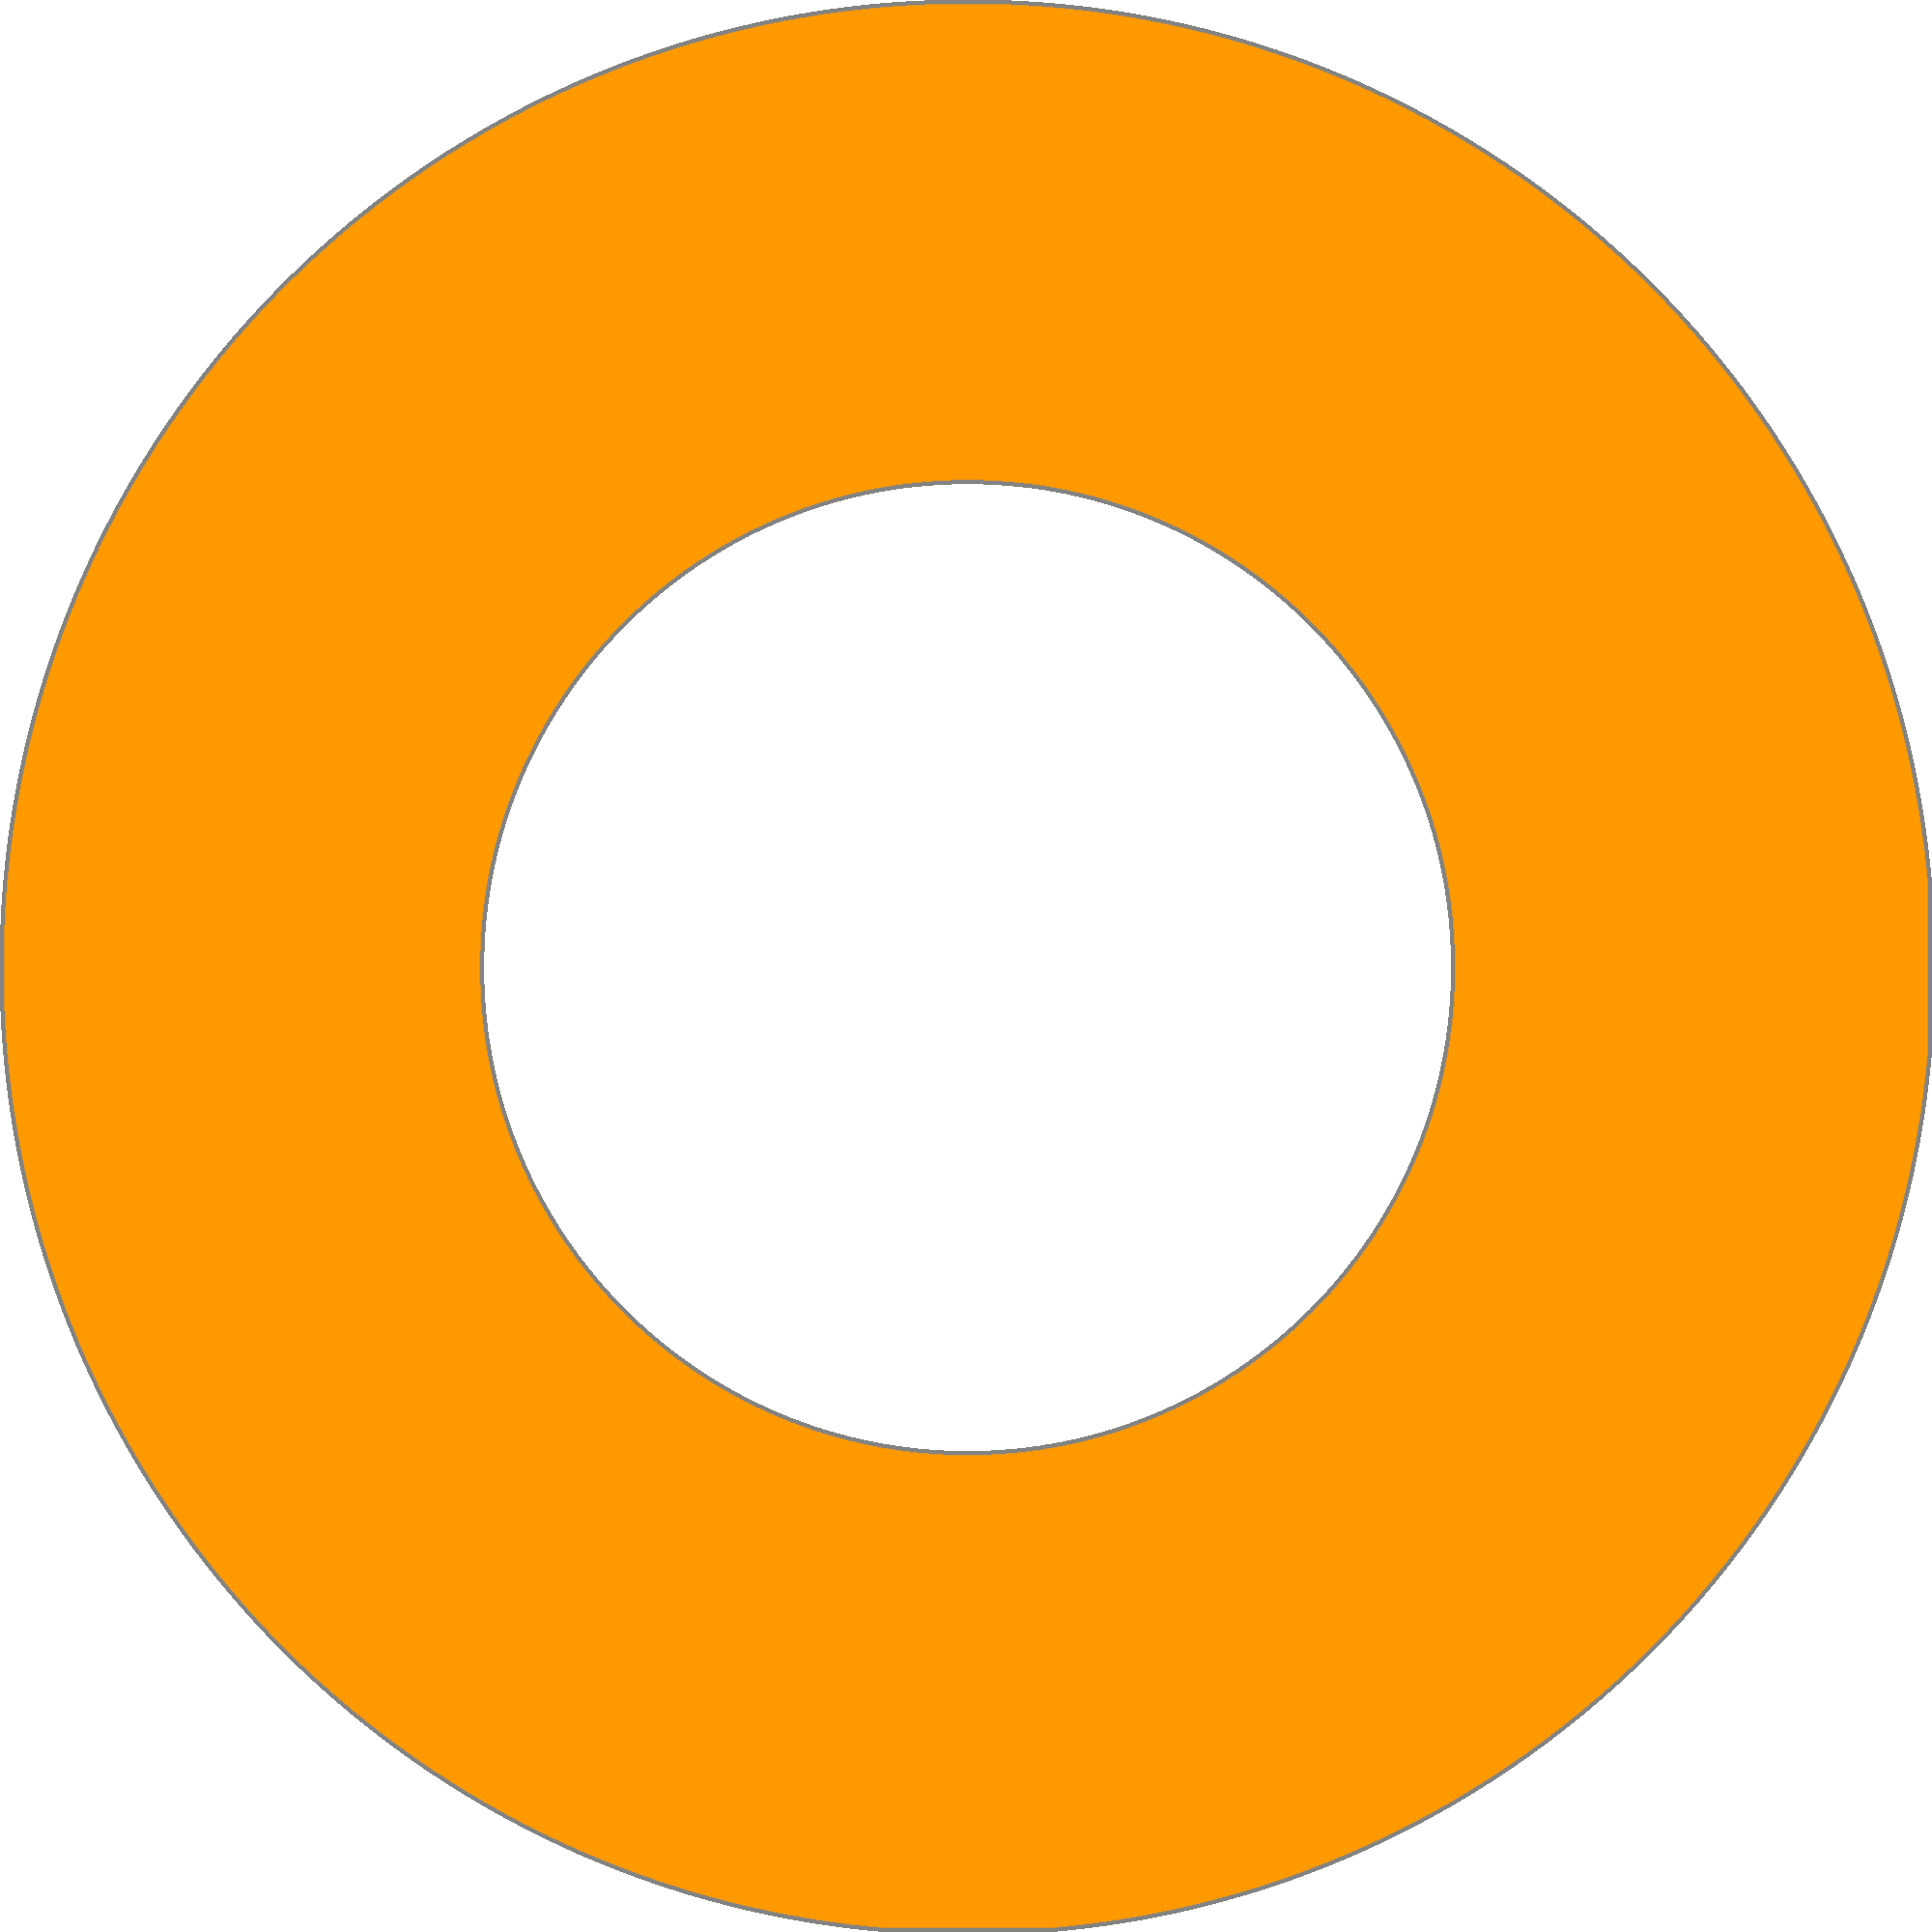 Orange Circle - Circle With Line Through (2000x2000)